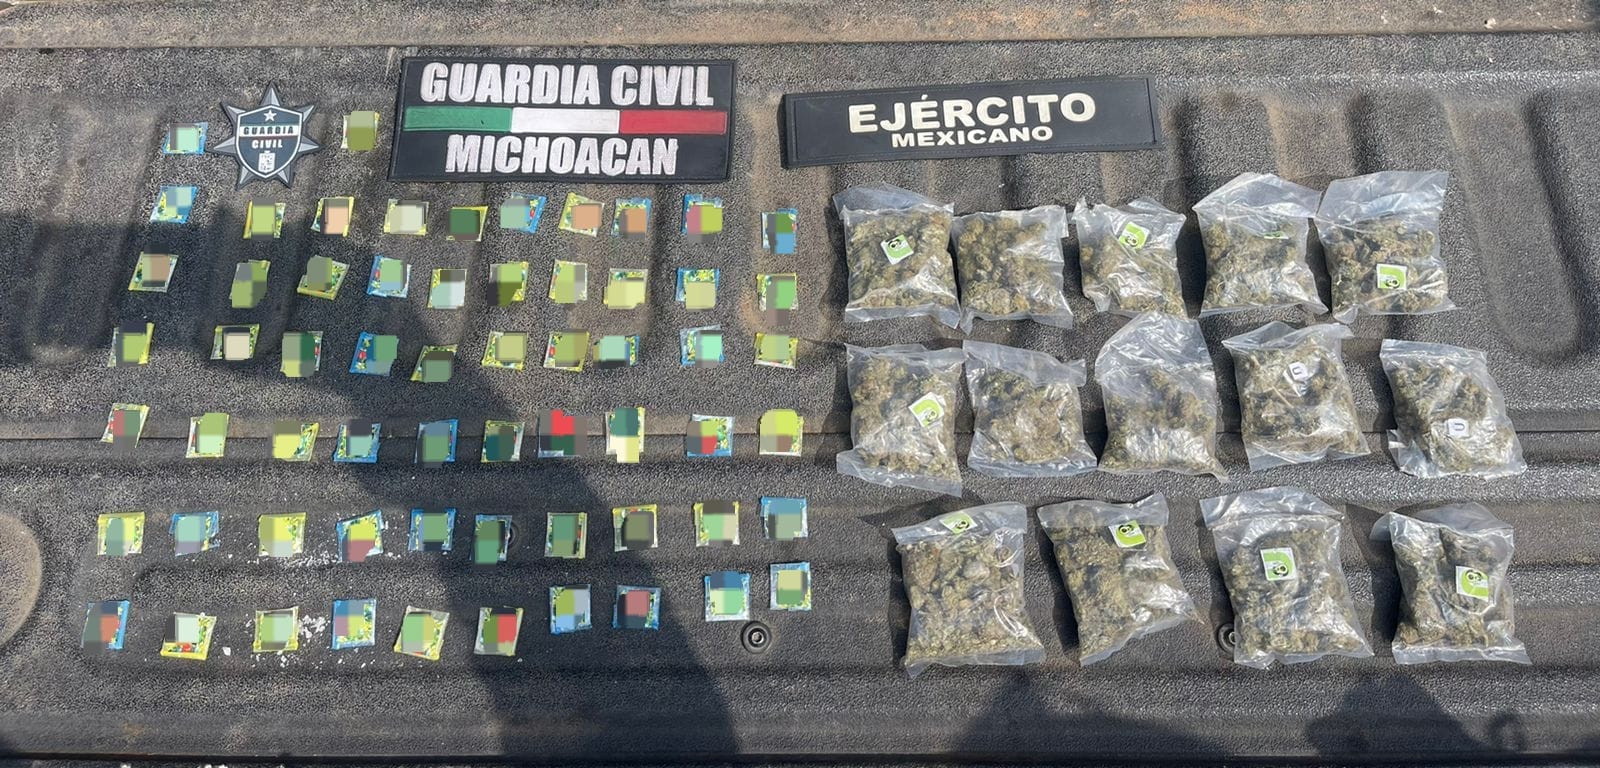 En Uruapan, Guardia Civil y Sedena detienen a tres en posesión de sustancias ilícitas.